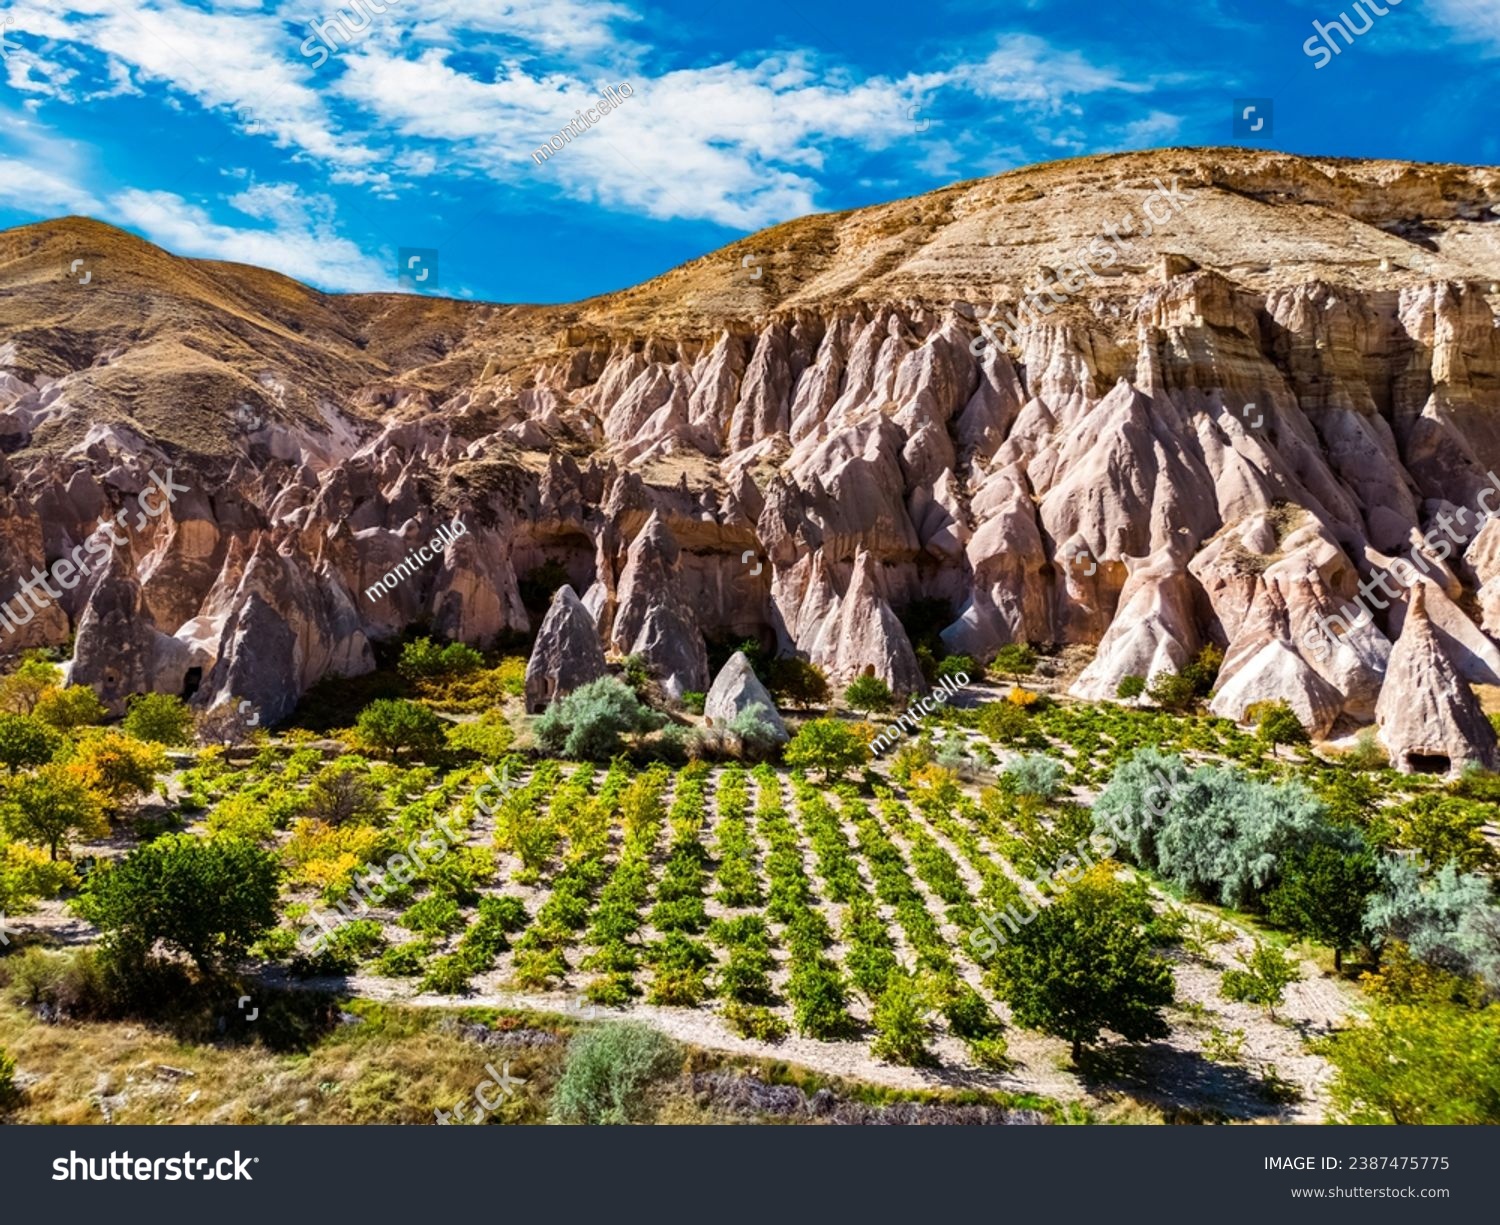 View of Zelve Valley in Cappadocia, Turkey. UNESCO World Heritage Site. #2387475775